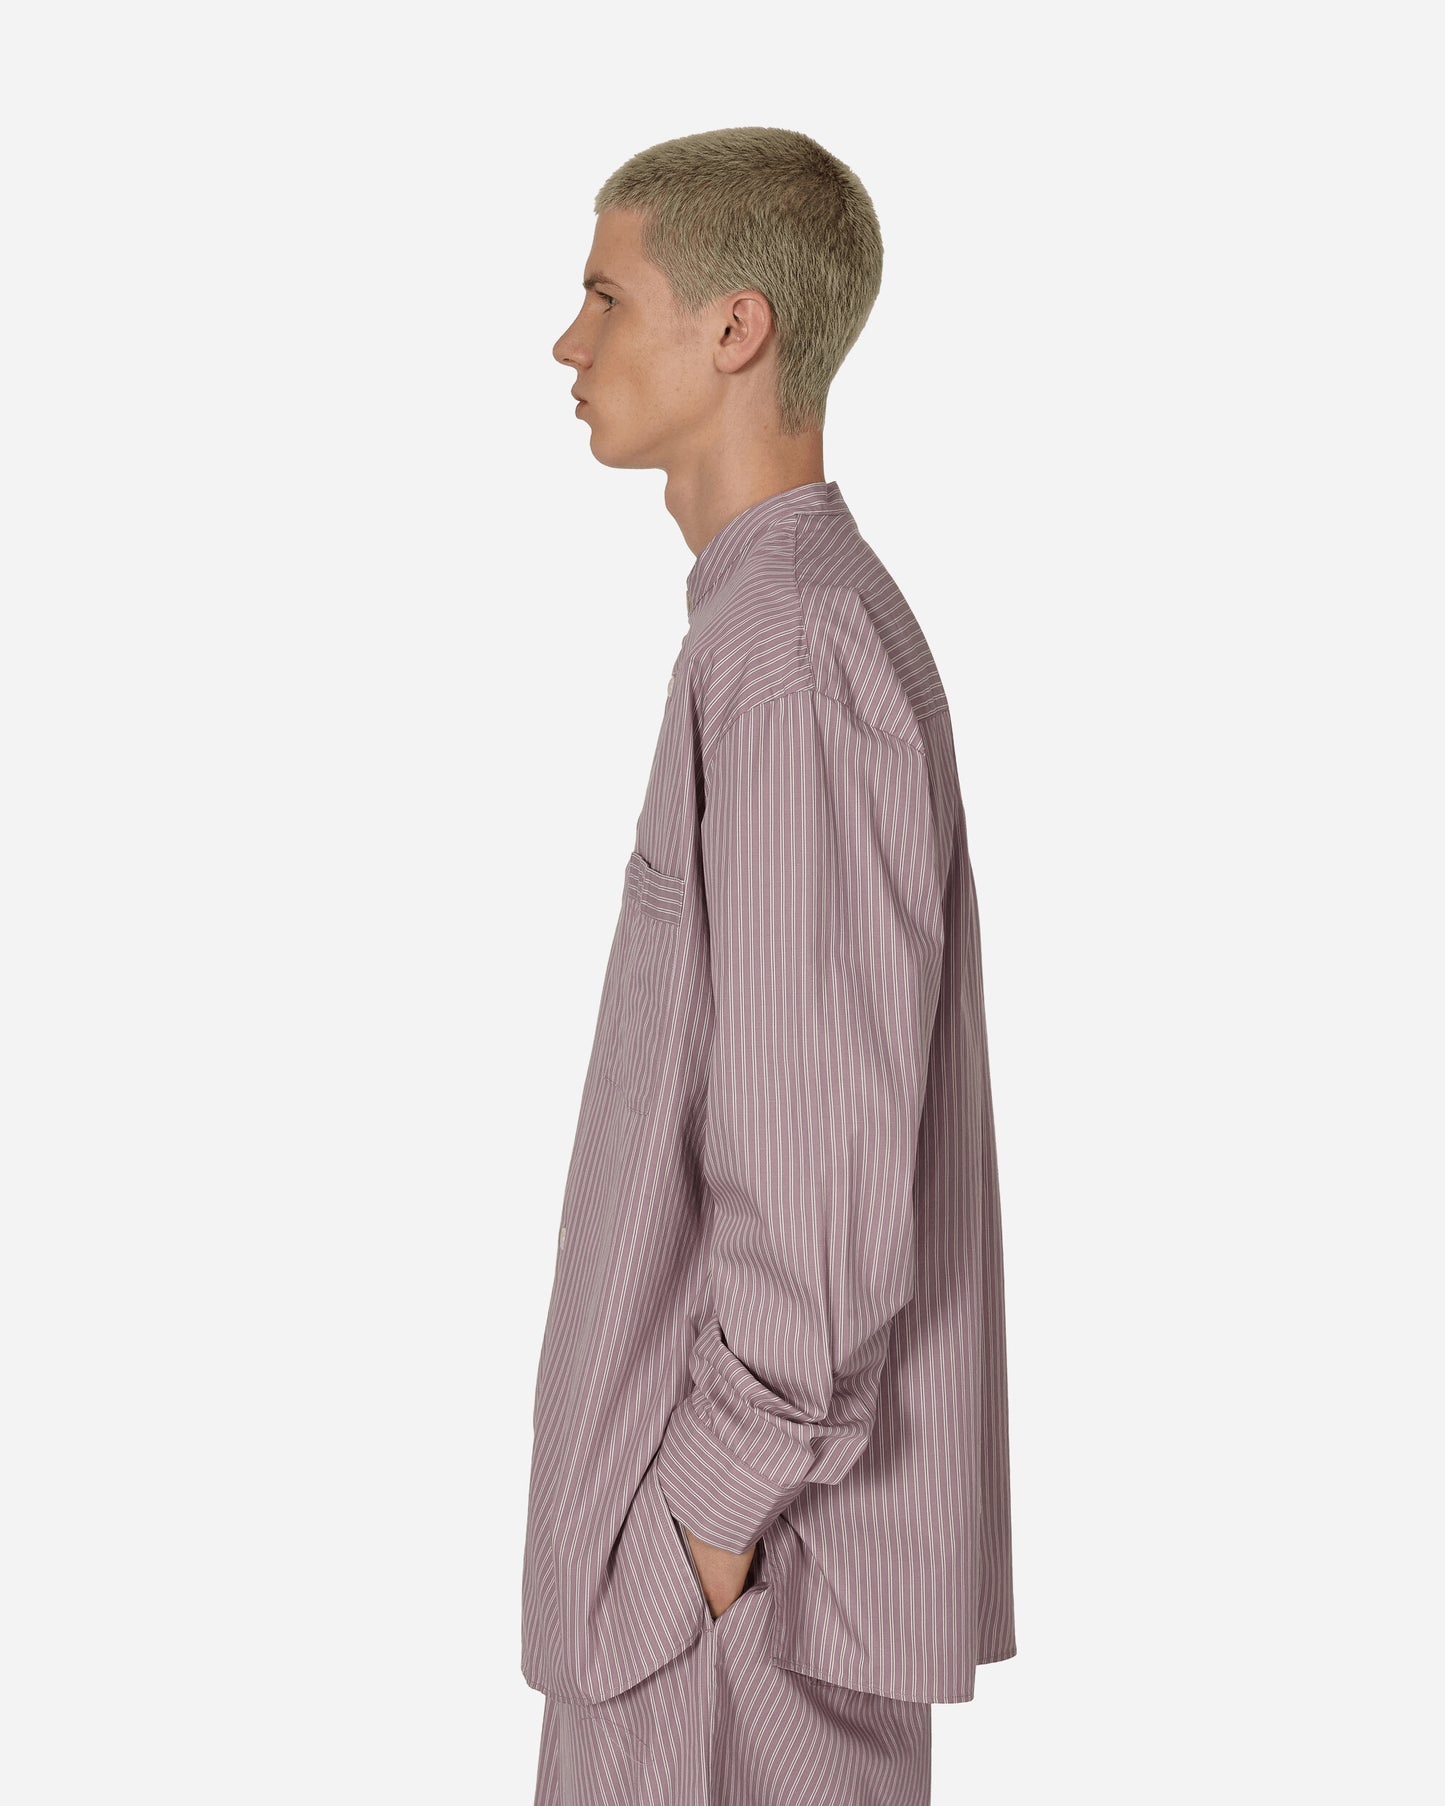 Tekla Sleeping Shirt Mauve Stripes Underwear Pajamas SWT MAS